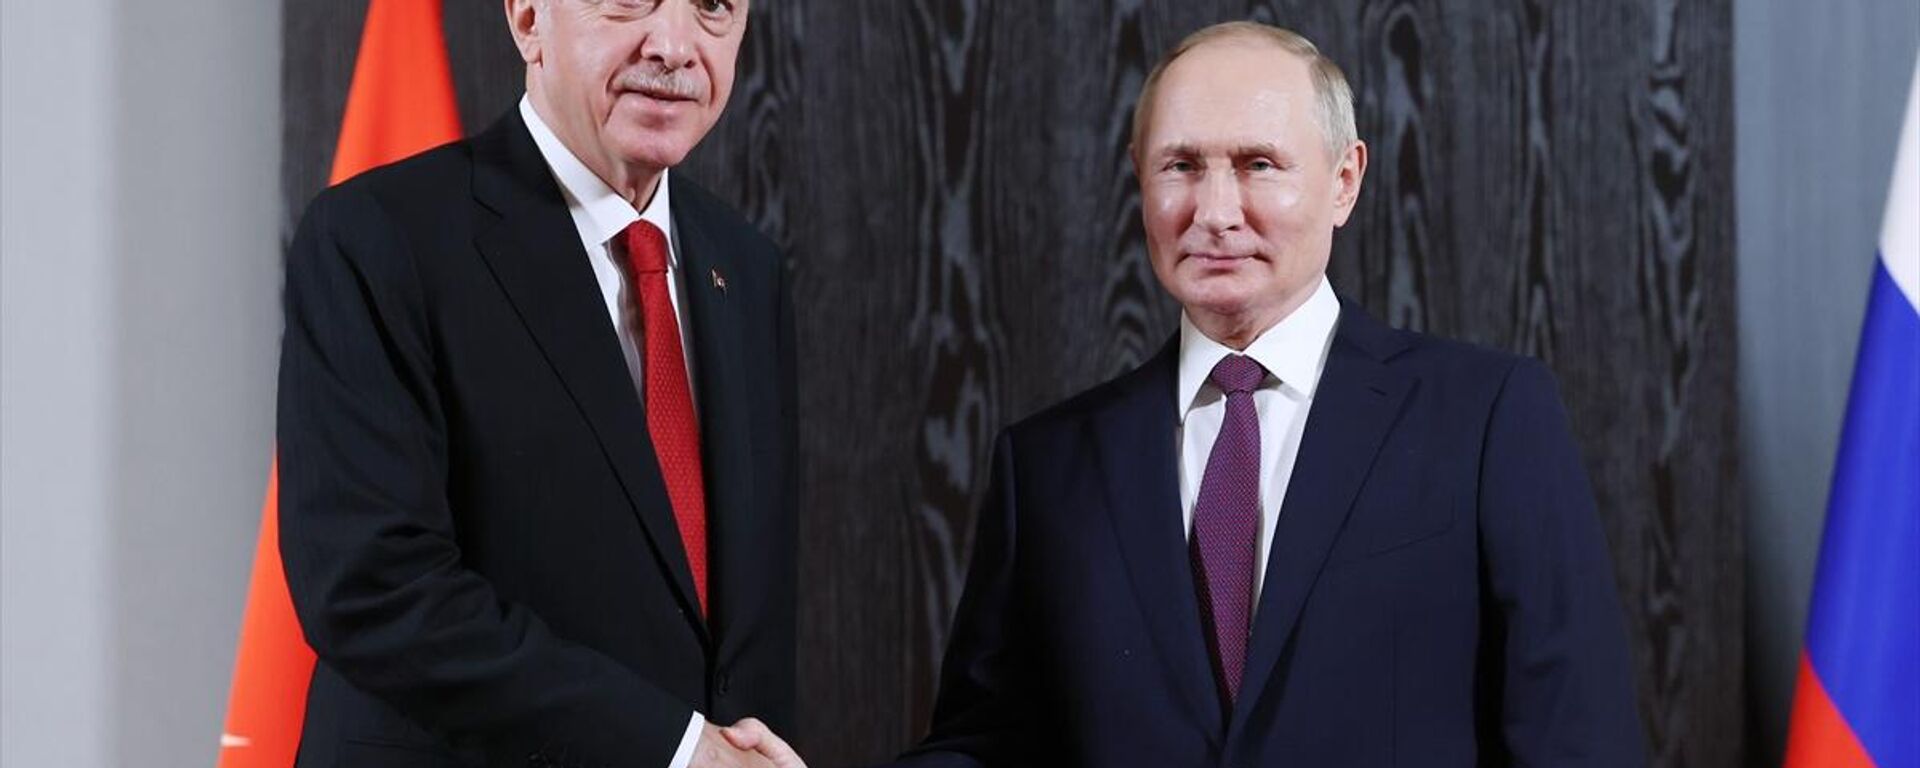 Cumhurbaşkanı Erdoğan'ın, Rusya Devlet Başkanı Putin ile görüştü - Sputnik Türkiye, 1920, 13.10.2022